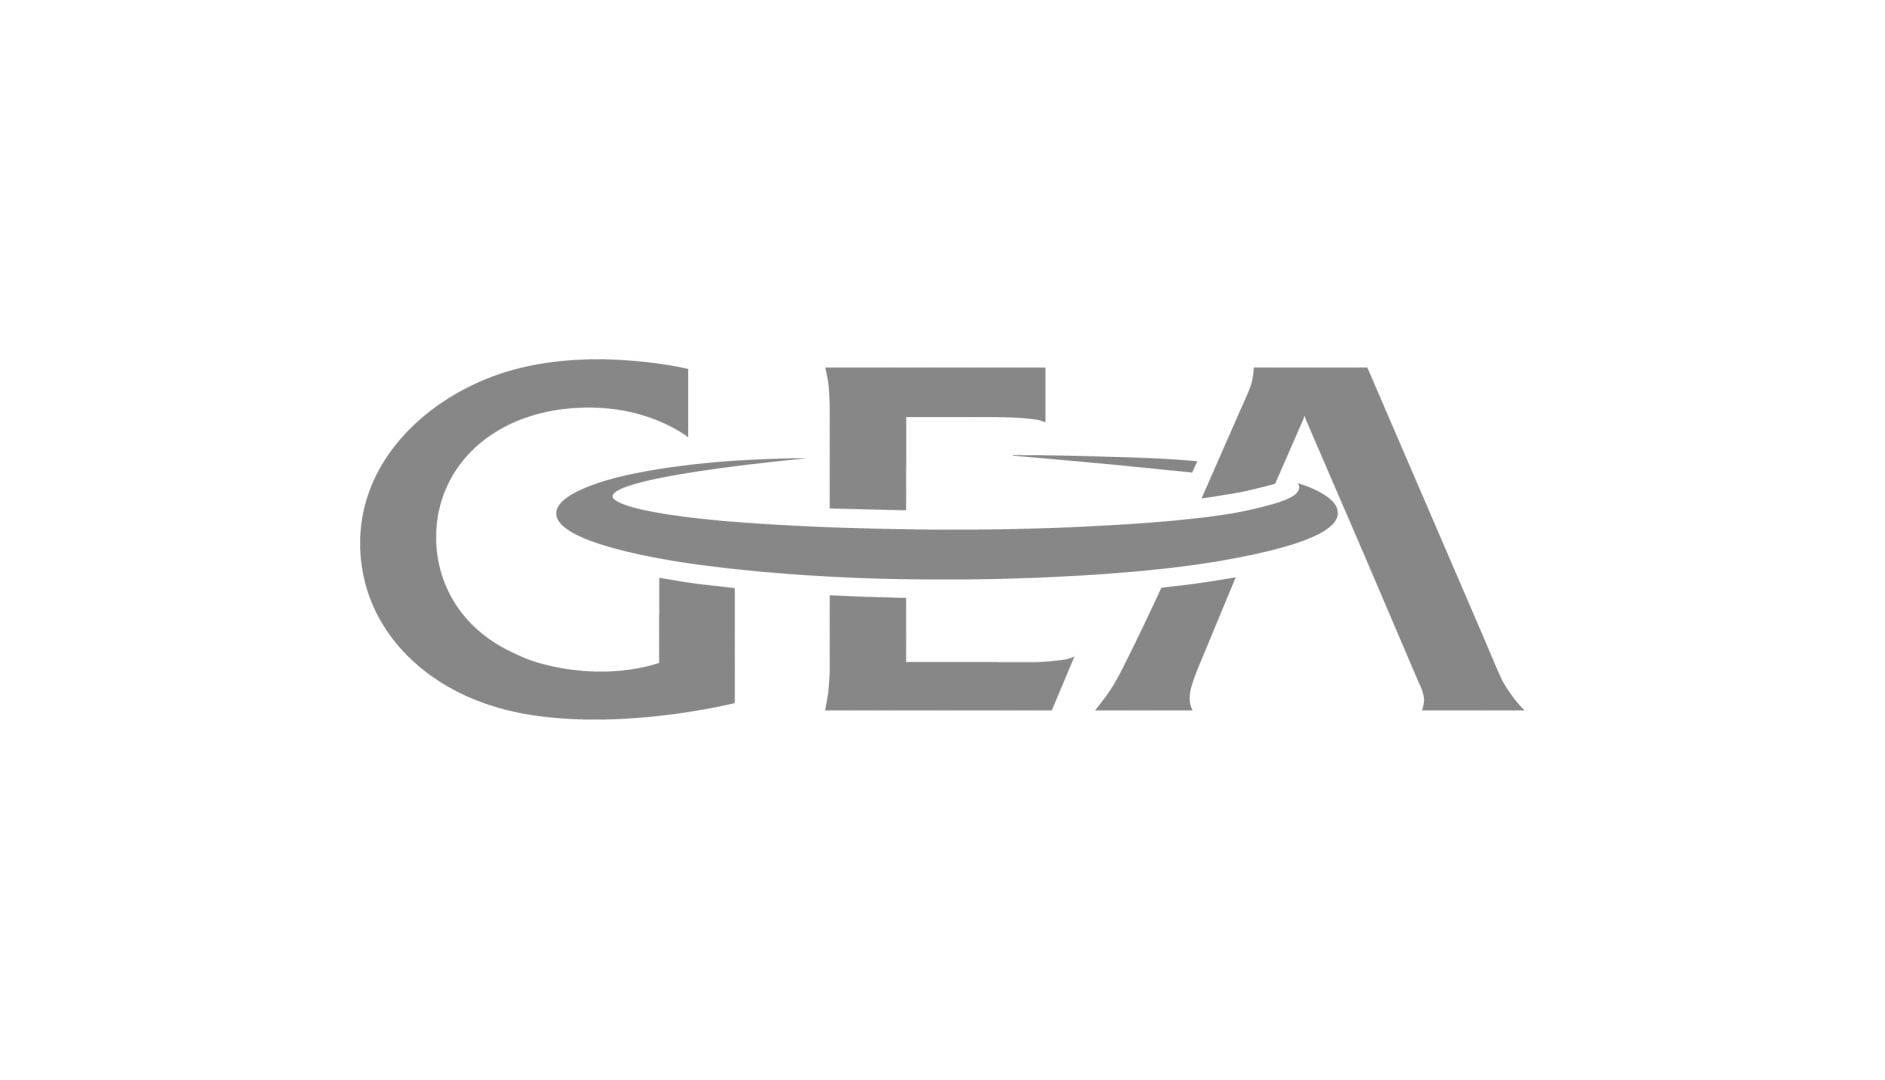 GEA- Partner of Kanchan metal